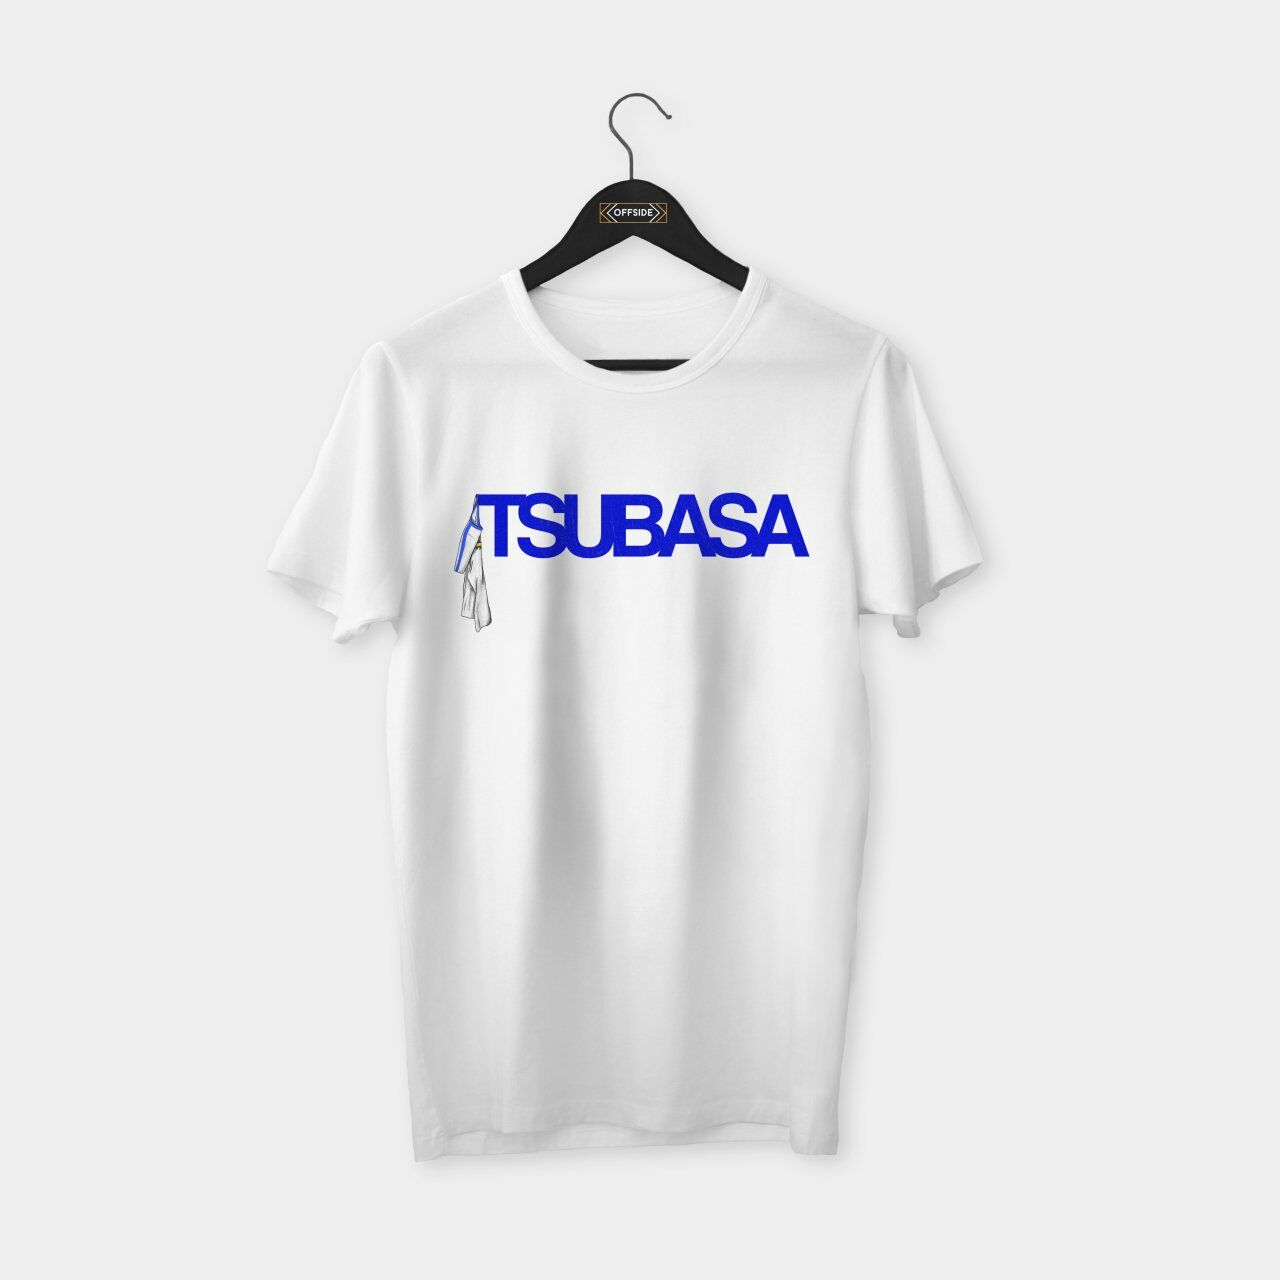 Tsubasa T-shirt